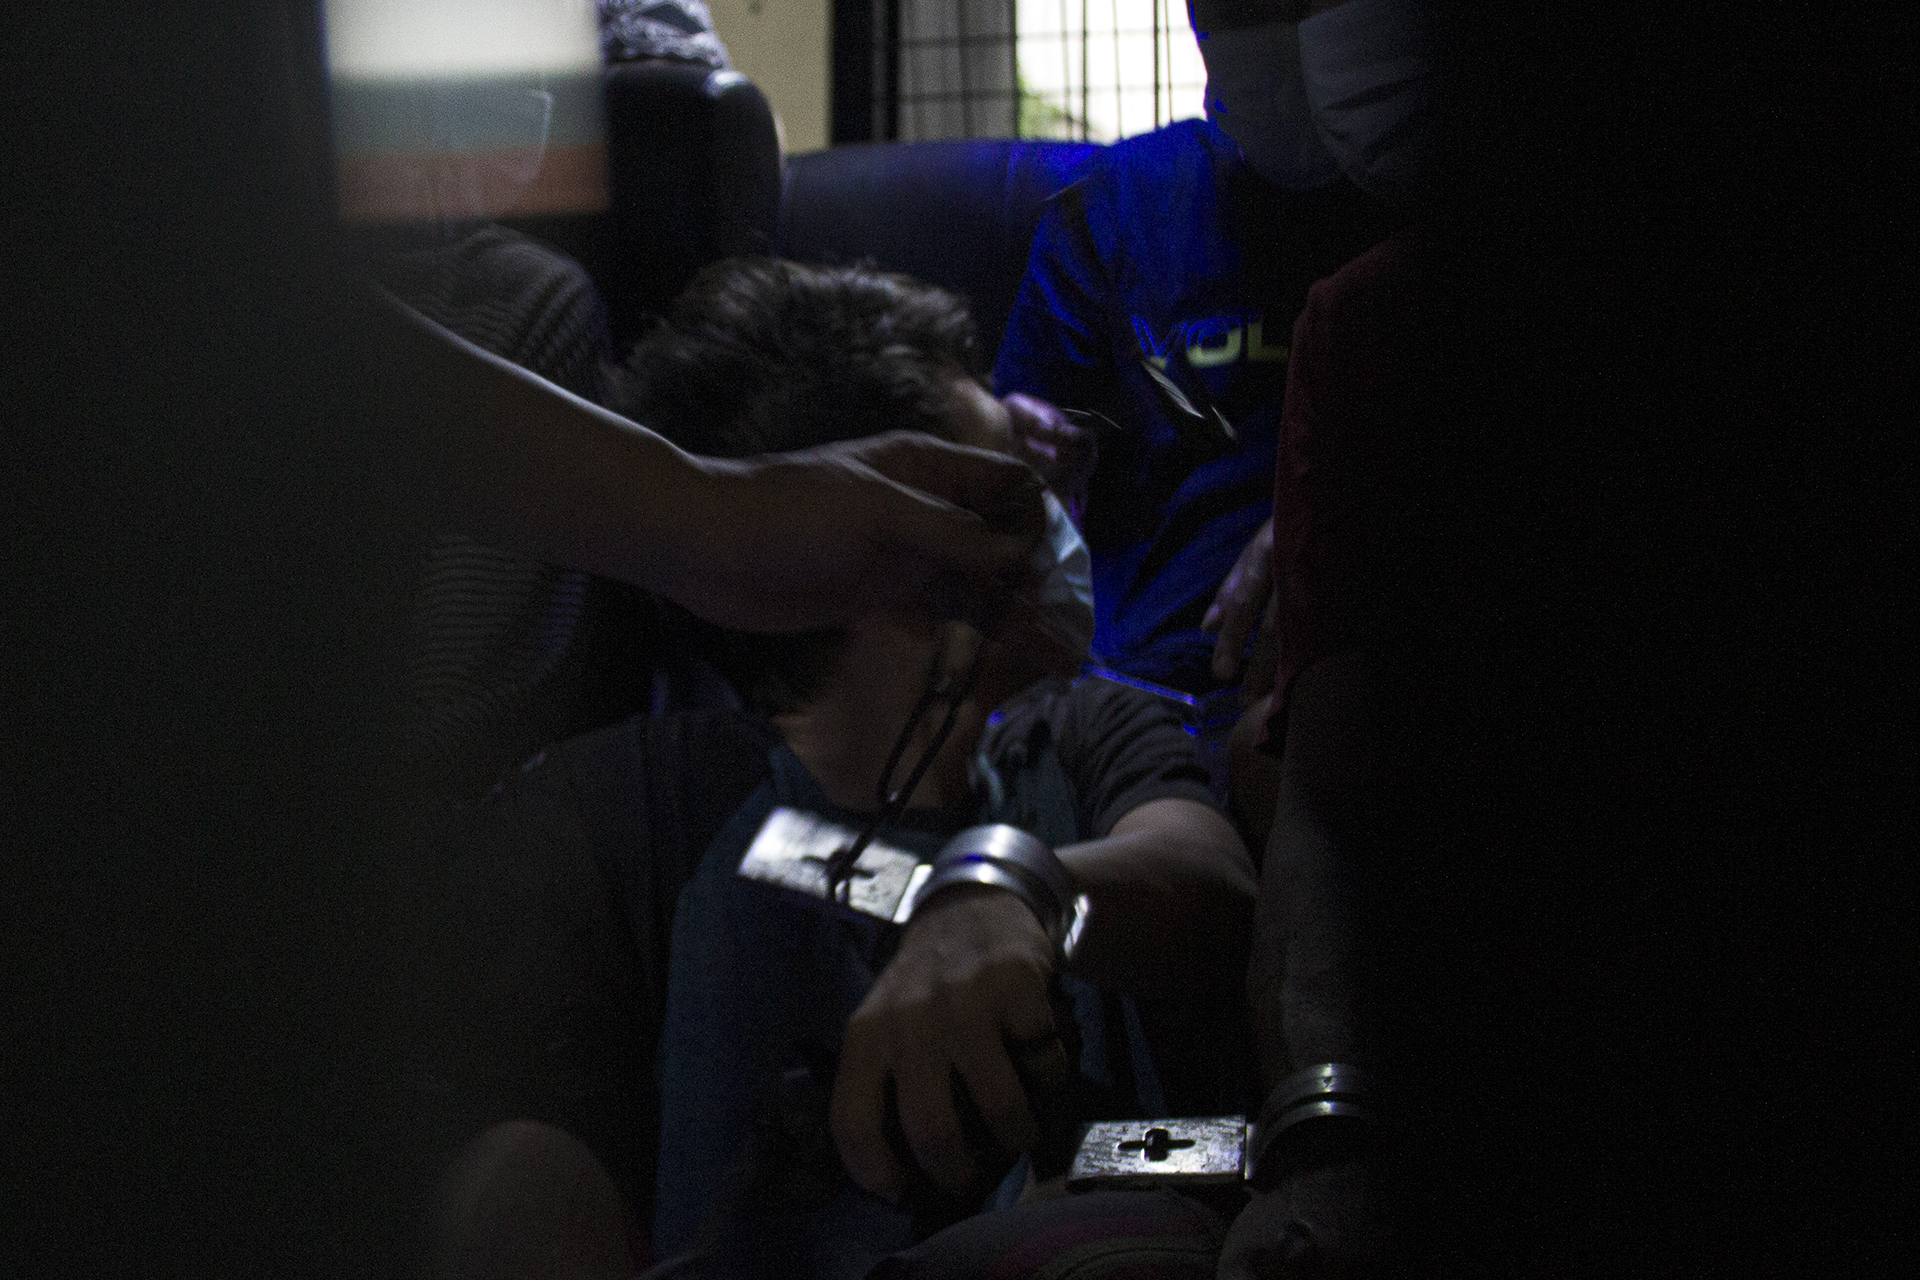 Delapan warga binaan tersandung kasus narkoba dengan masa tahanan hingga seumur hidup dipindahkan ke Lapas Kelas I Palembang, pasca upaya hendak melarikan diri dari dalam Lapas. Tanharimage/Halonusa.com